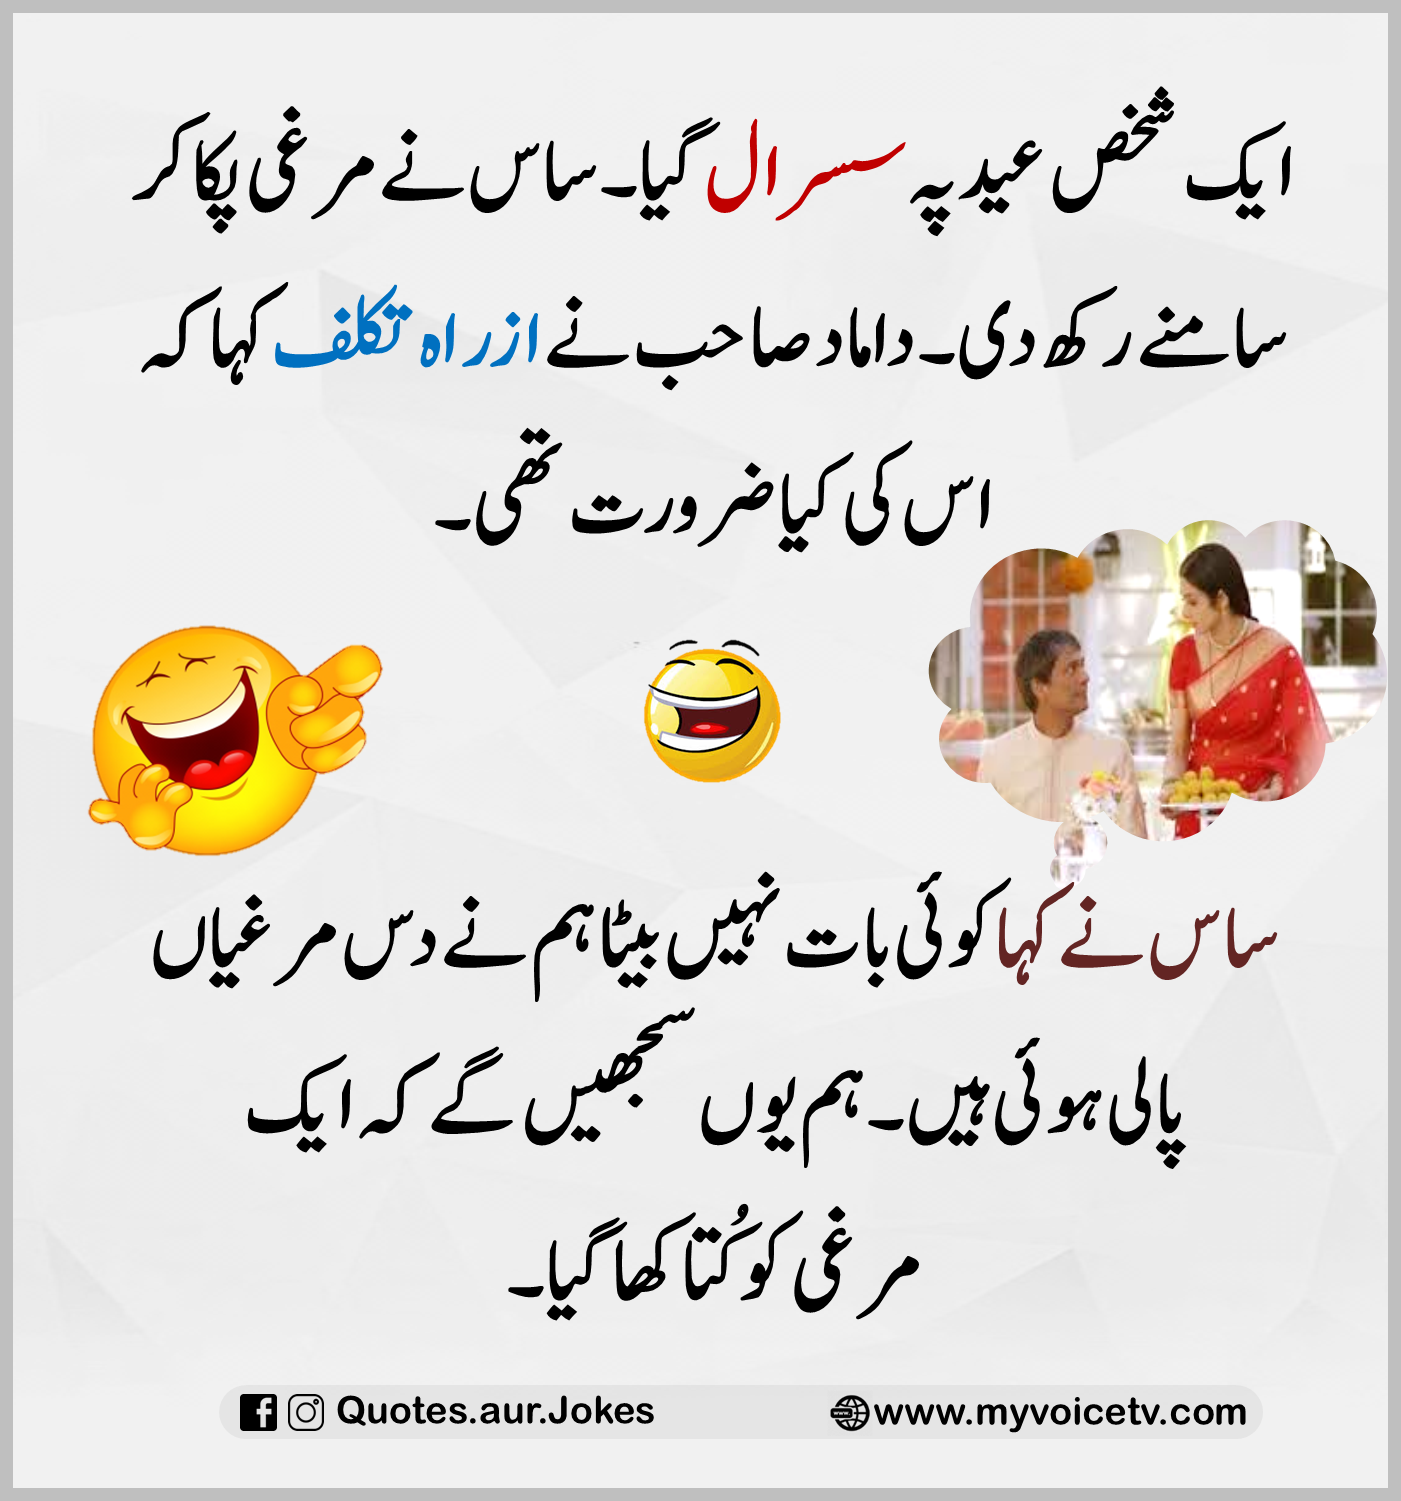 Urdu Funny Jokes In Urdu Image To U 